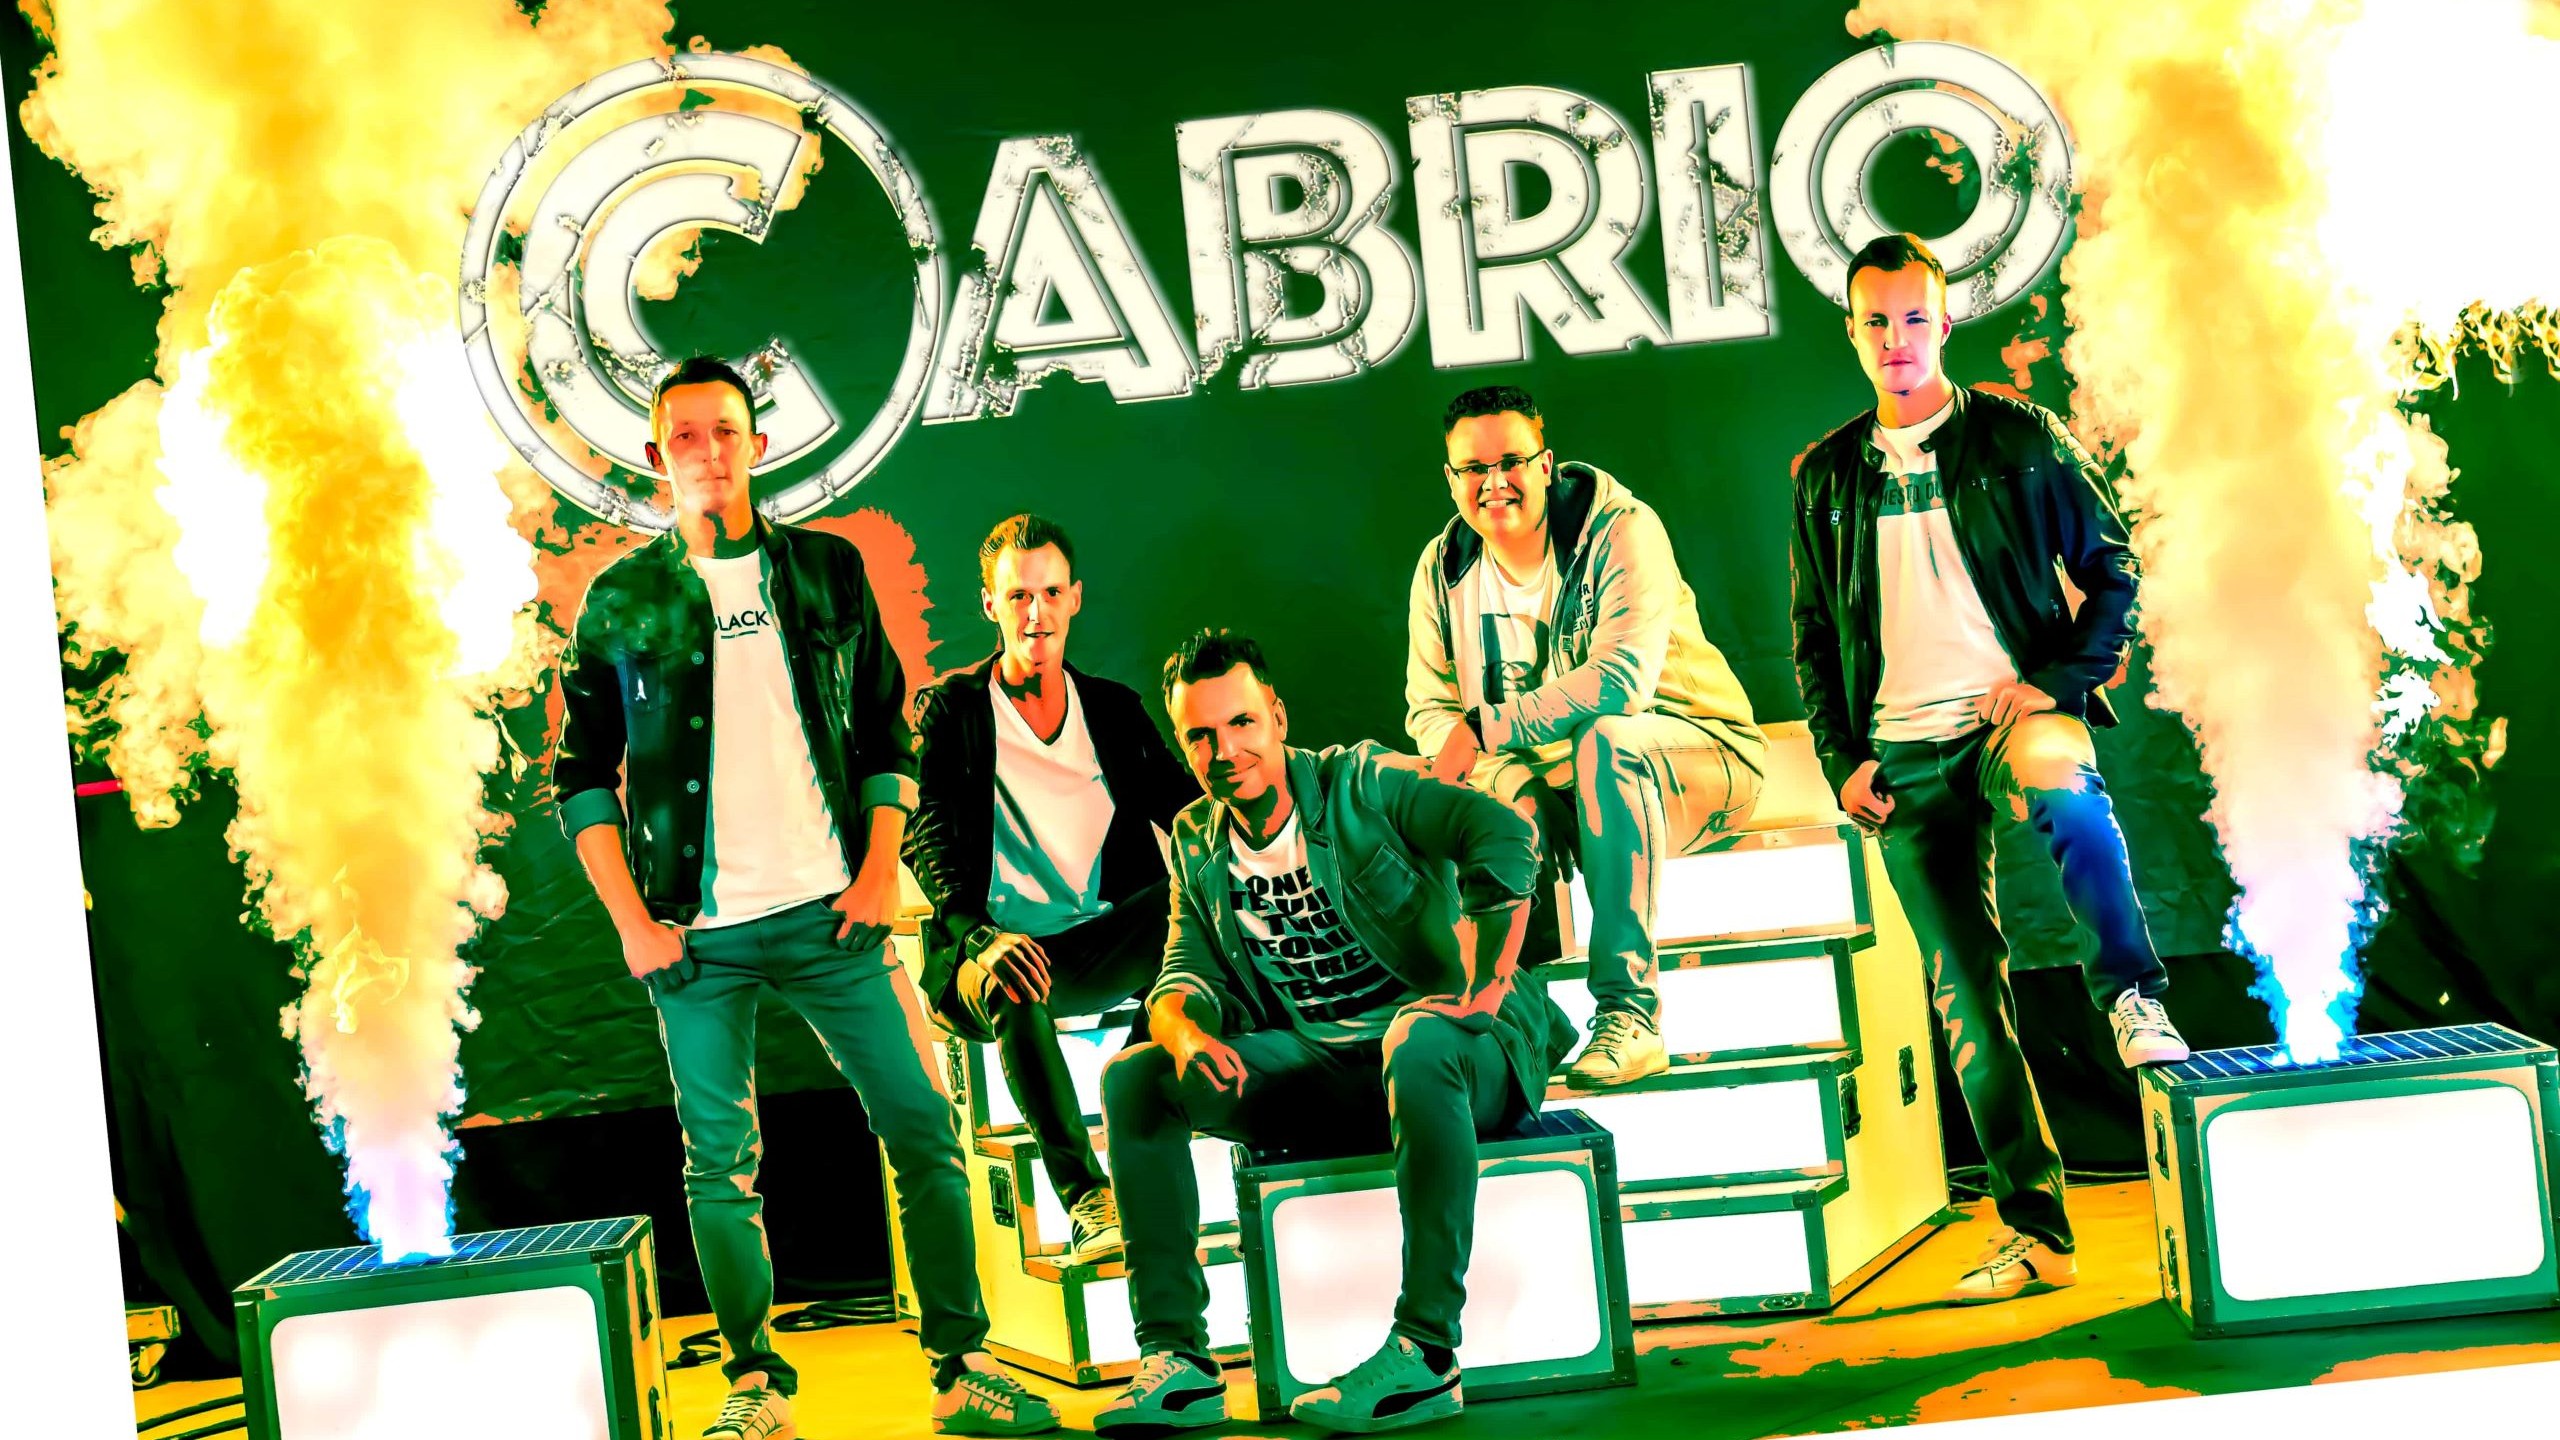 Cabrio-Coverband Boeken